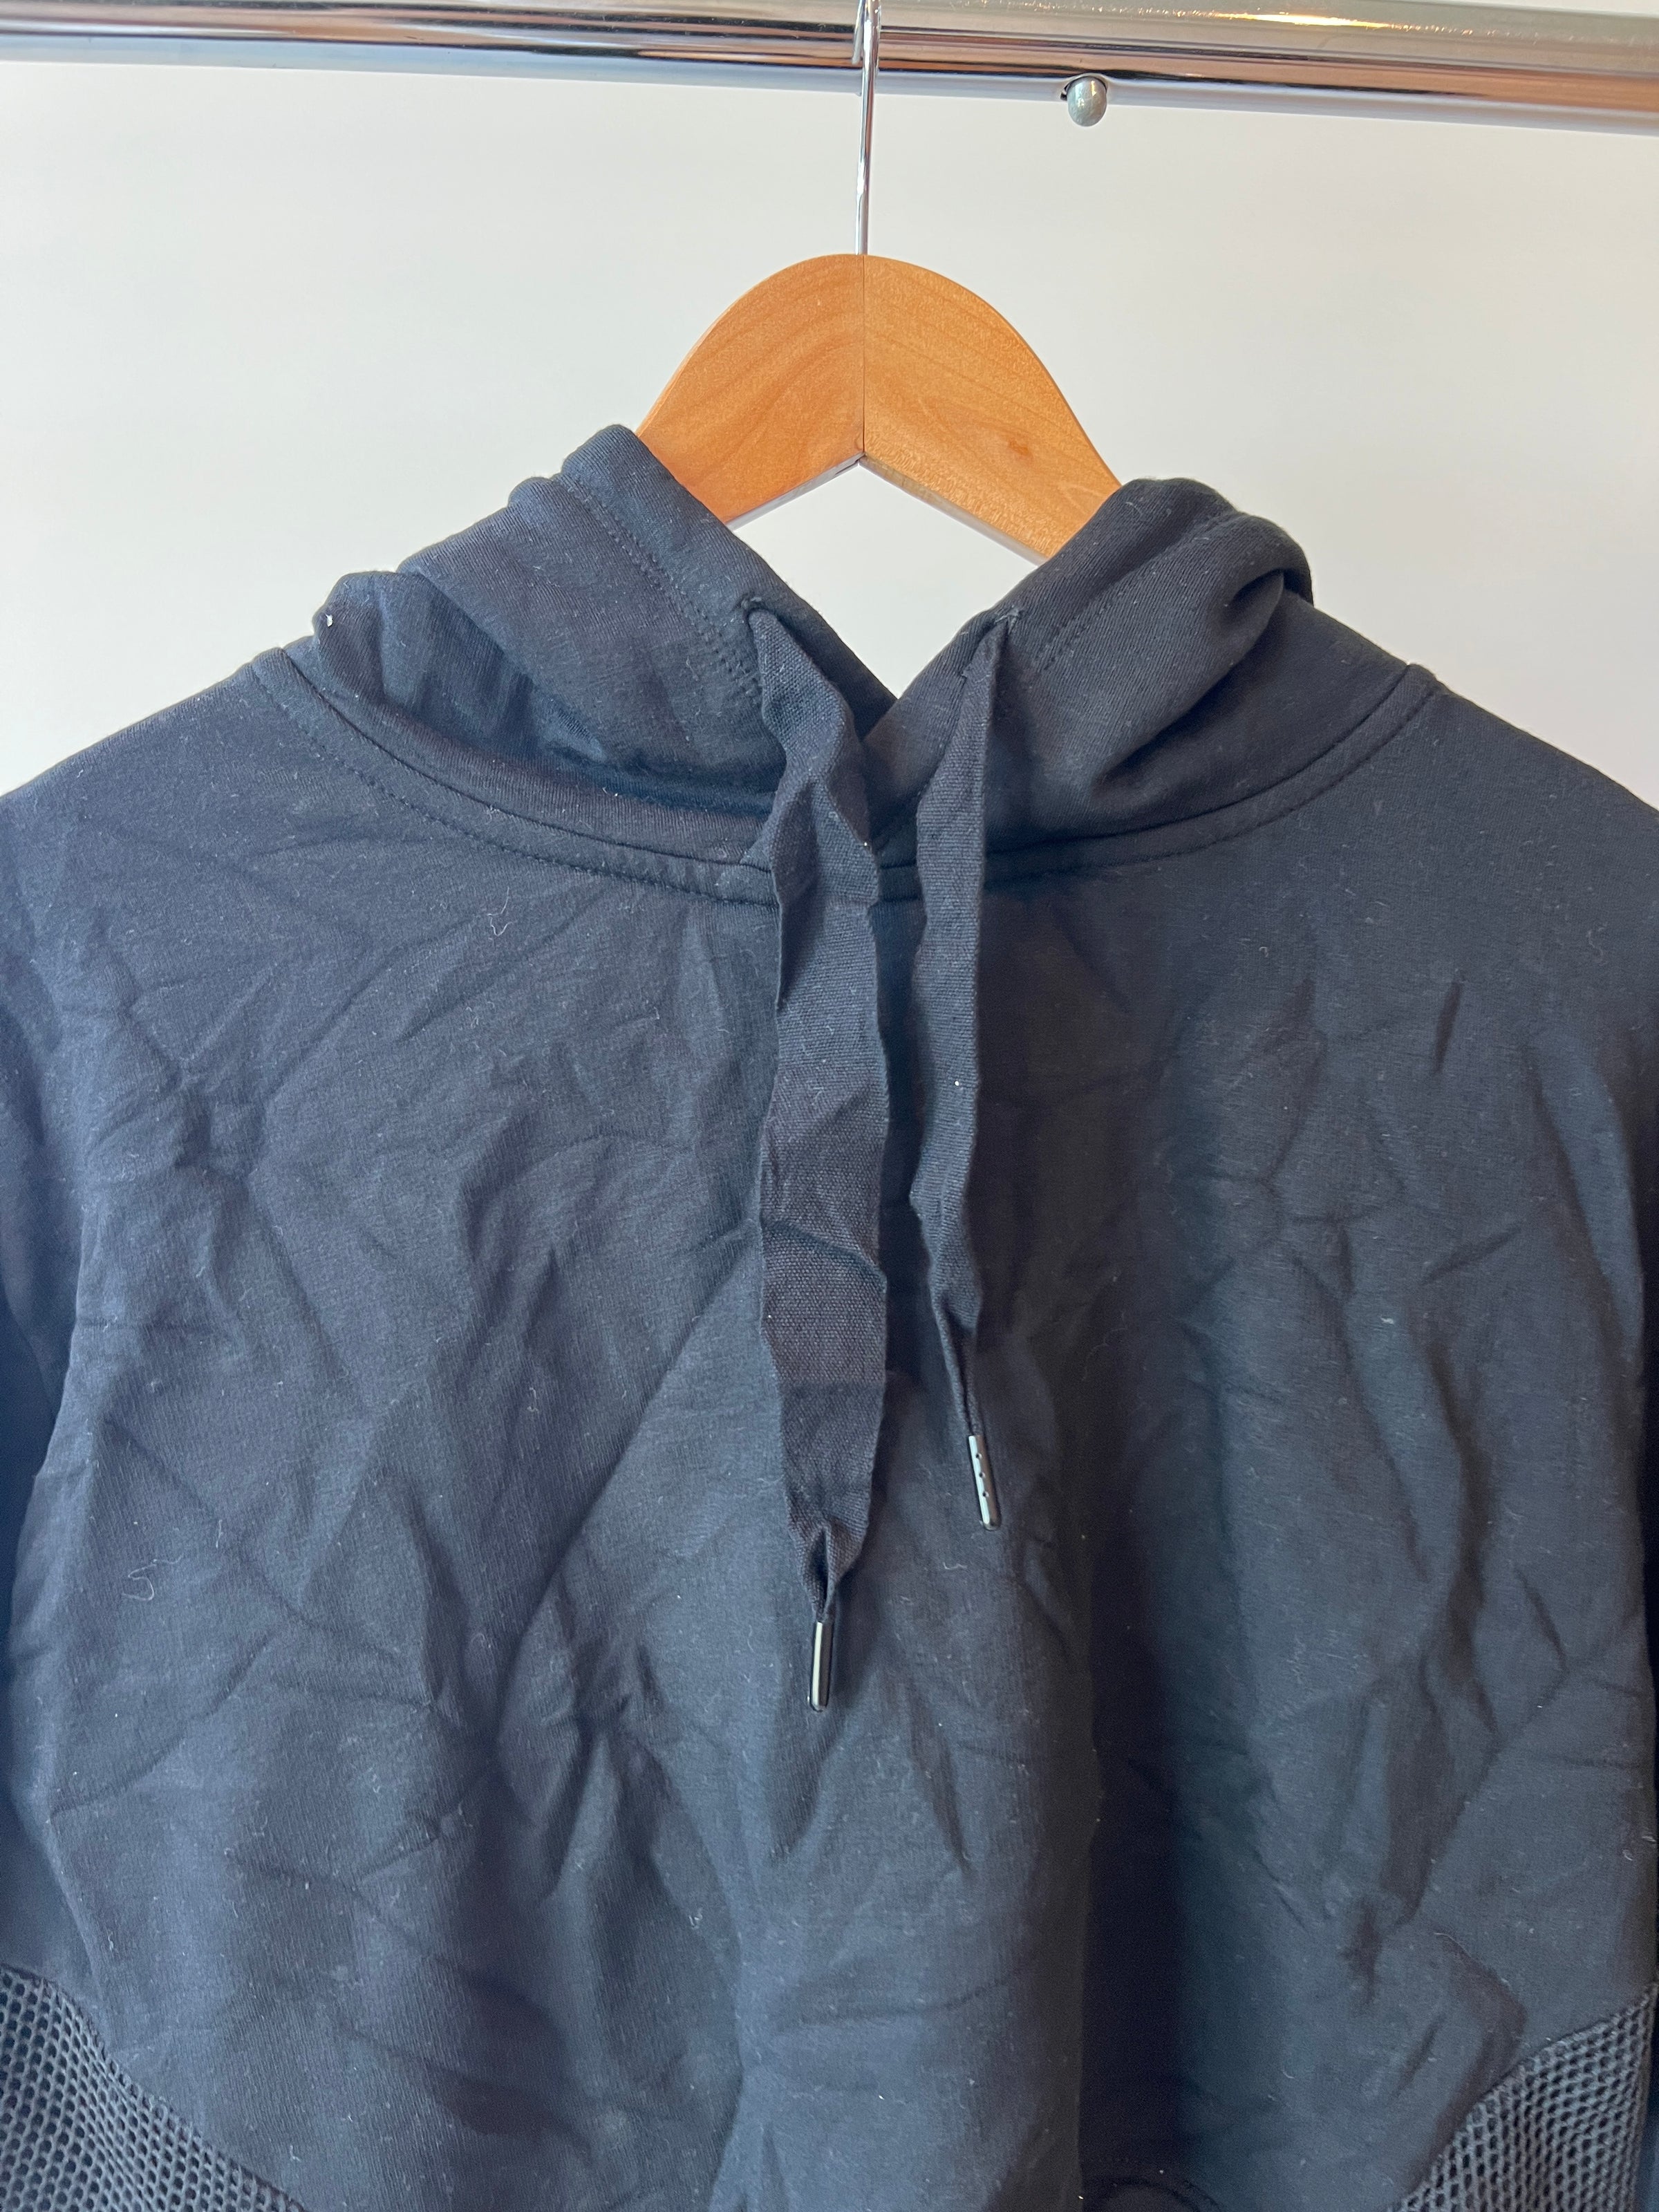 Rockwear Black Cropped Sweatshirt Hoodie - AU 12 –